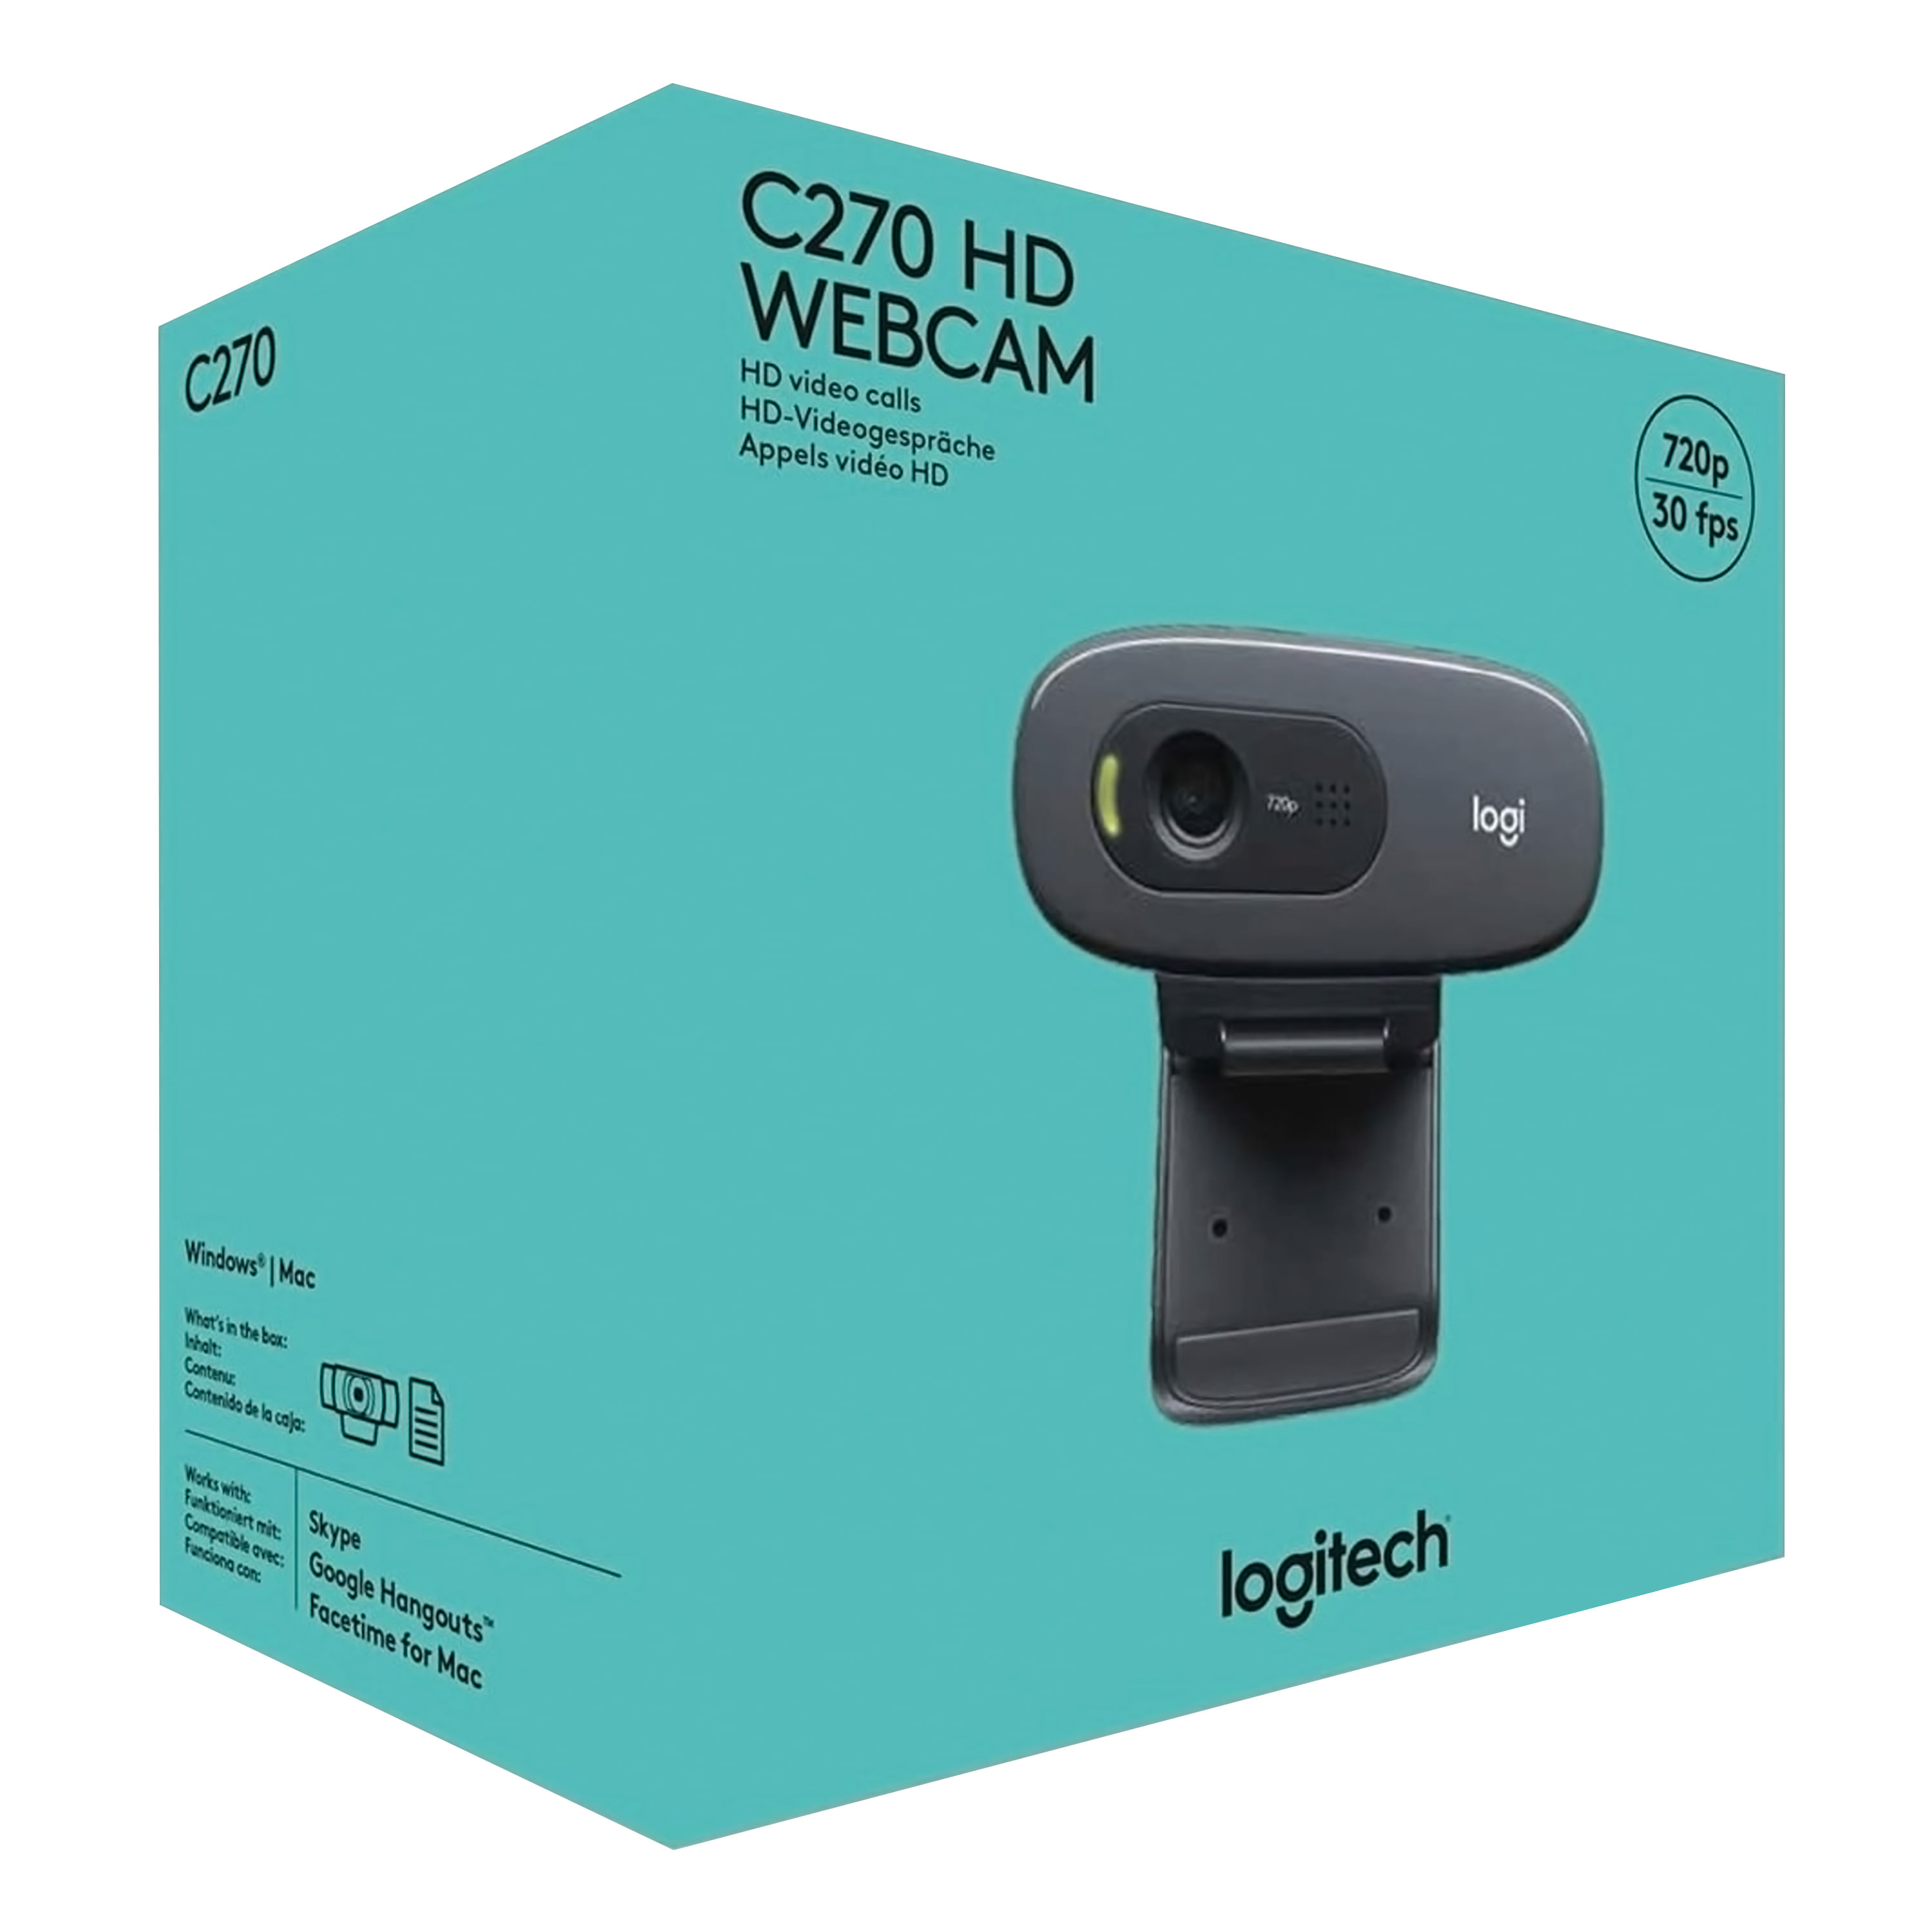 Comprar Camara Web Logitech conector Usb HD 720p modelo C270 - unidad